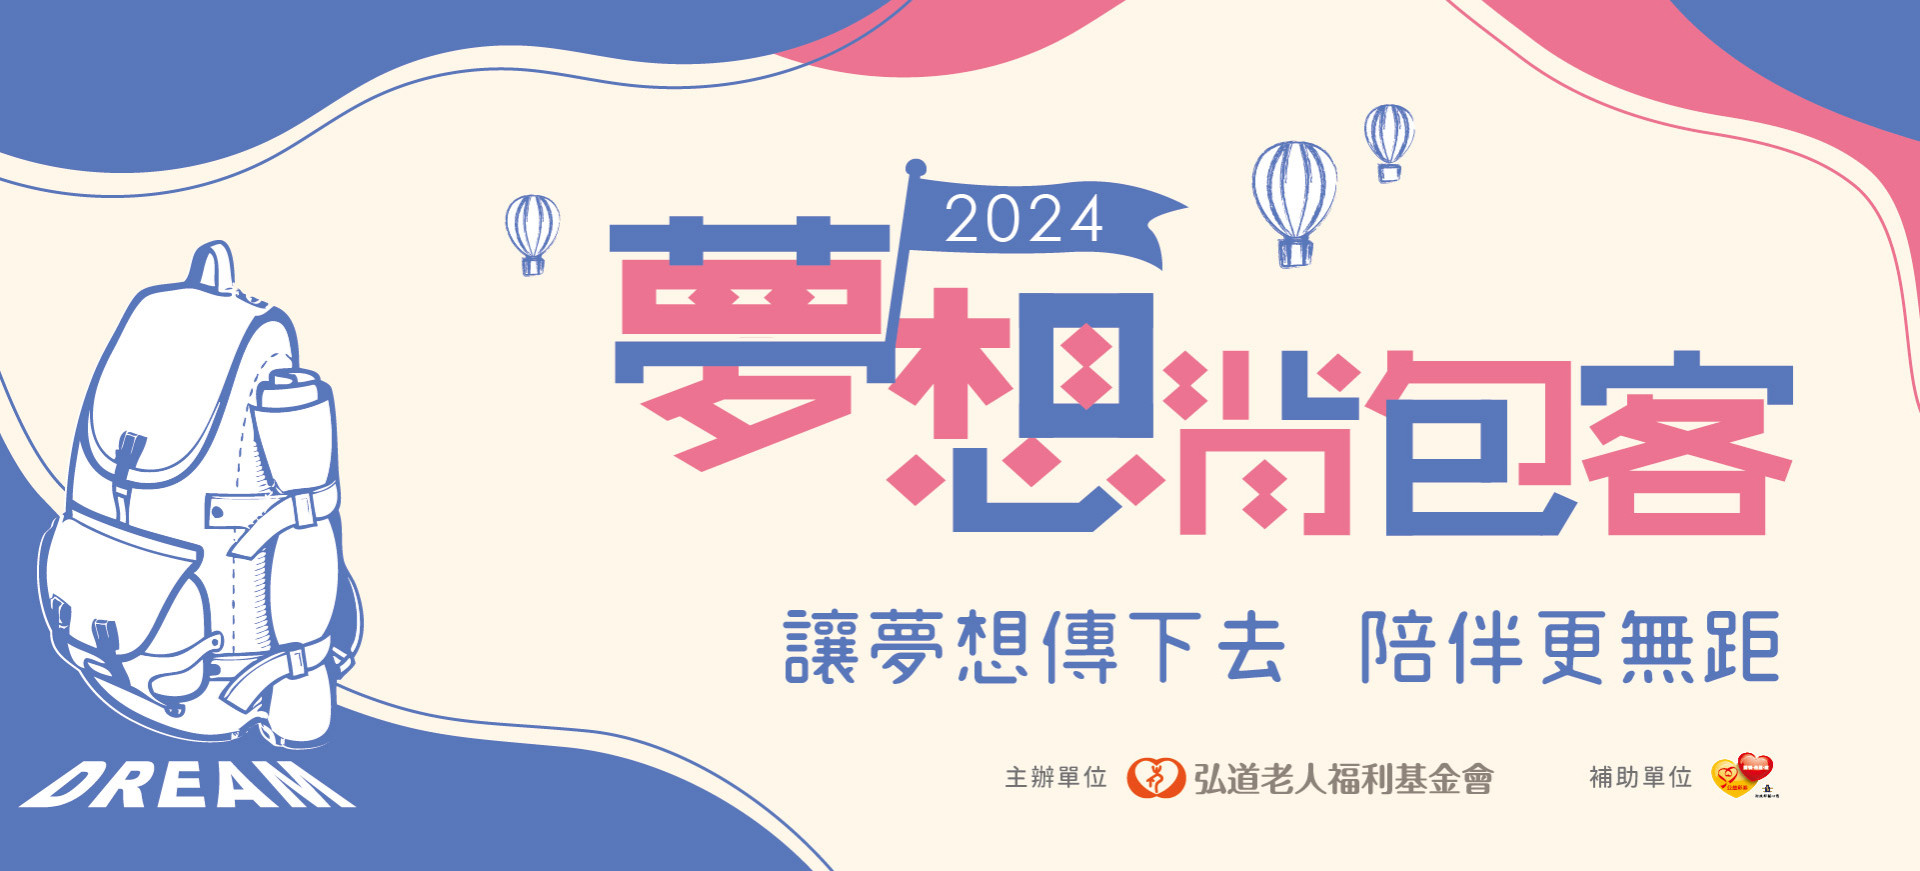 【活動報名】2024夢想背包客-活動招募開跑